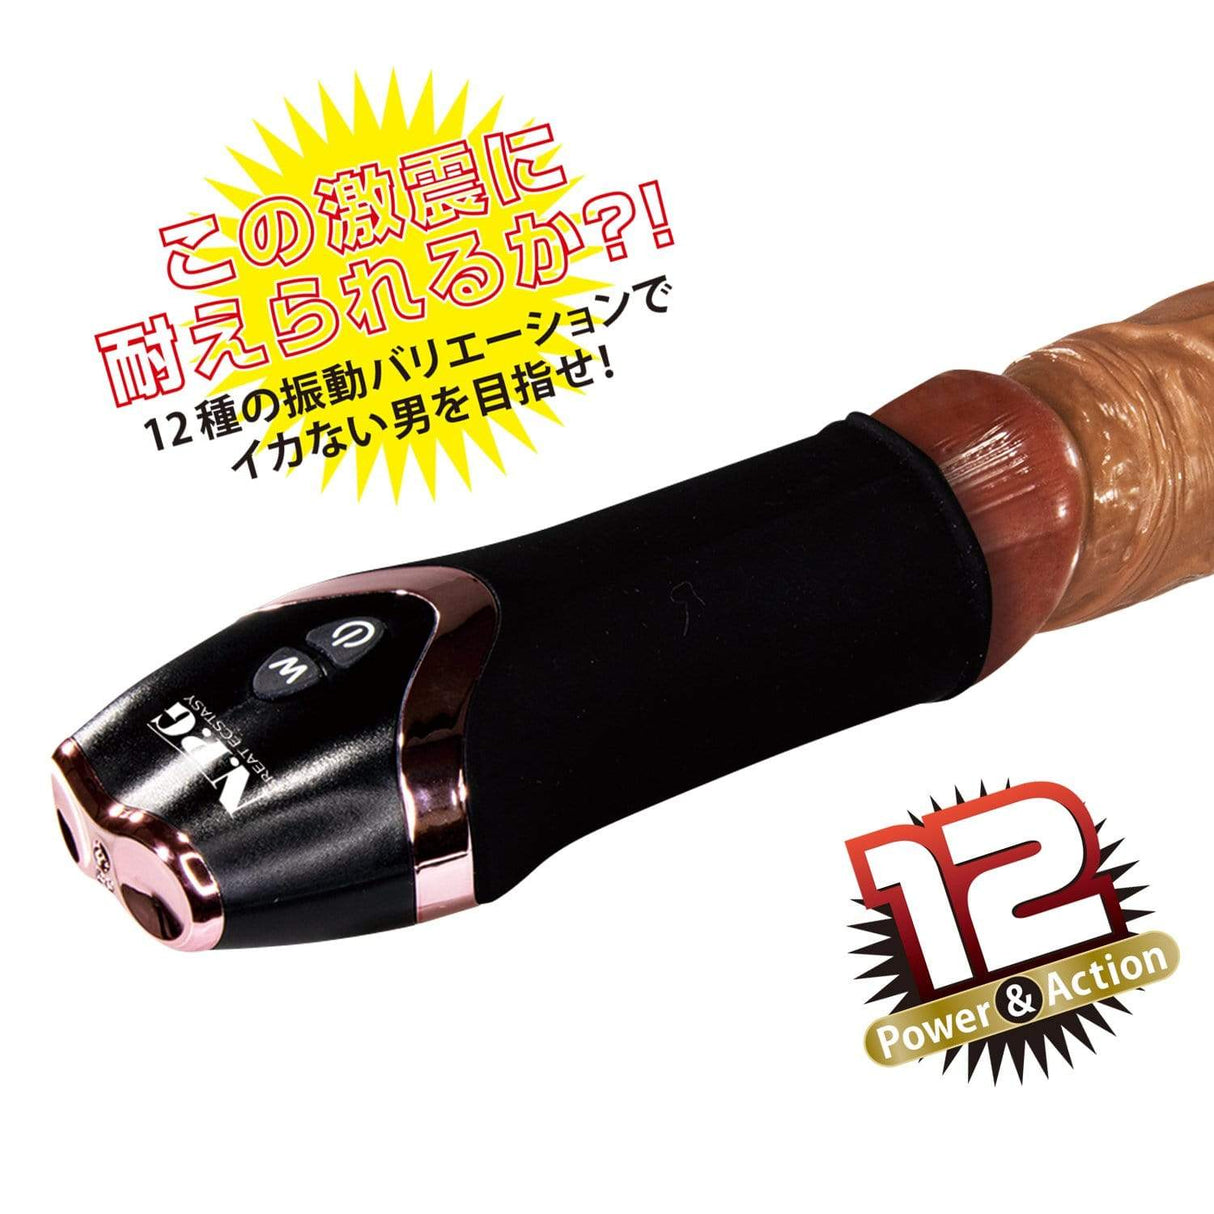 NPG - Gekishine Rechargeable Penis Trainer Masturbator (Black) NPG1145 CherryAffairs